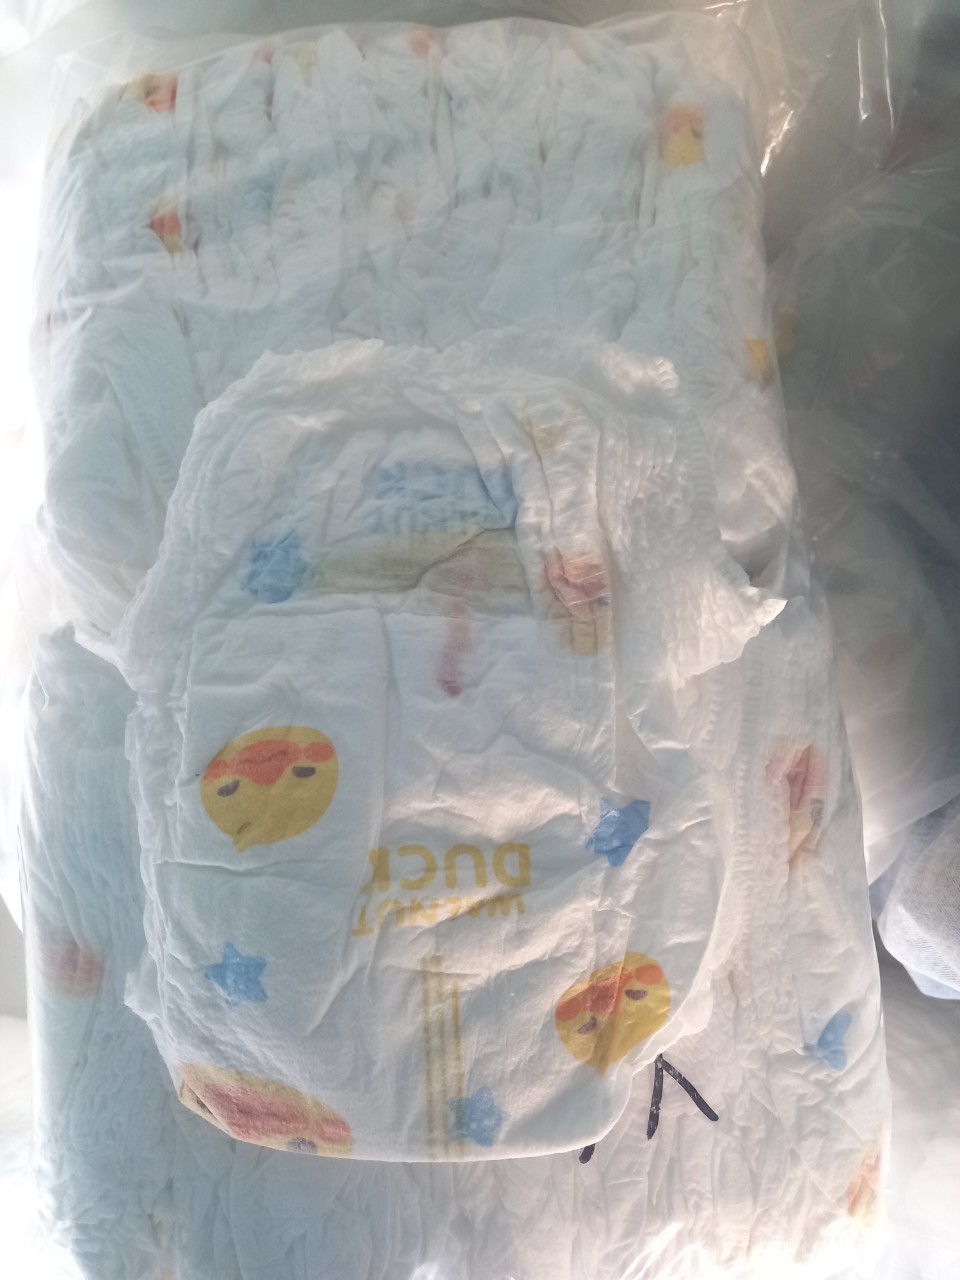 [HCM]50 cái bỉm trần quần pull up baby size M L XL XXL XXXL 1 bịch tại Tphcm giá rẻ